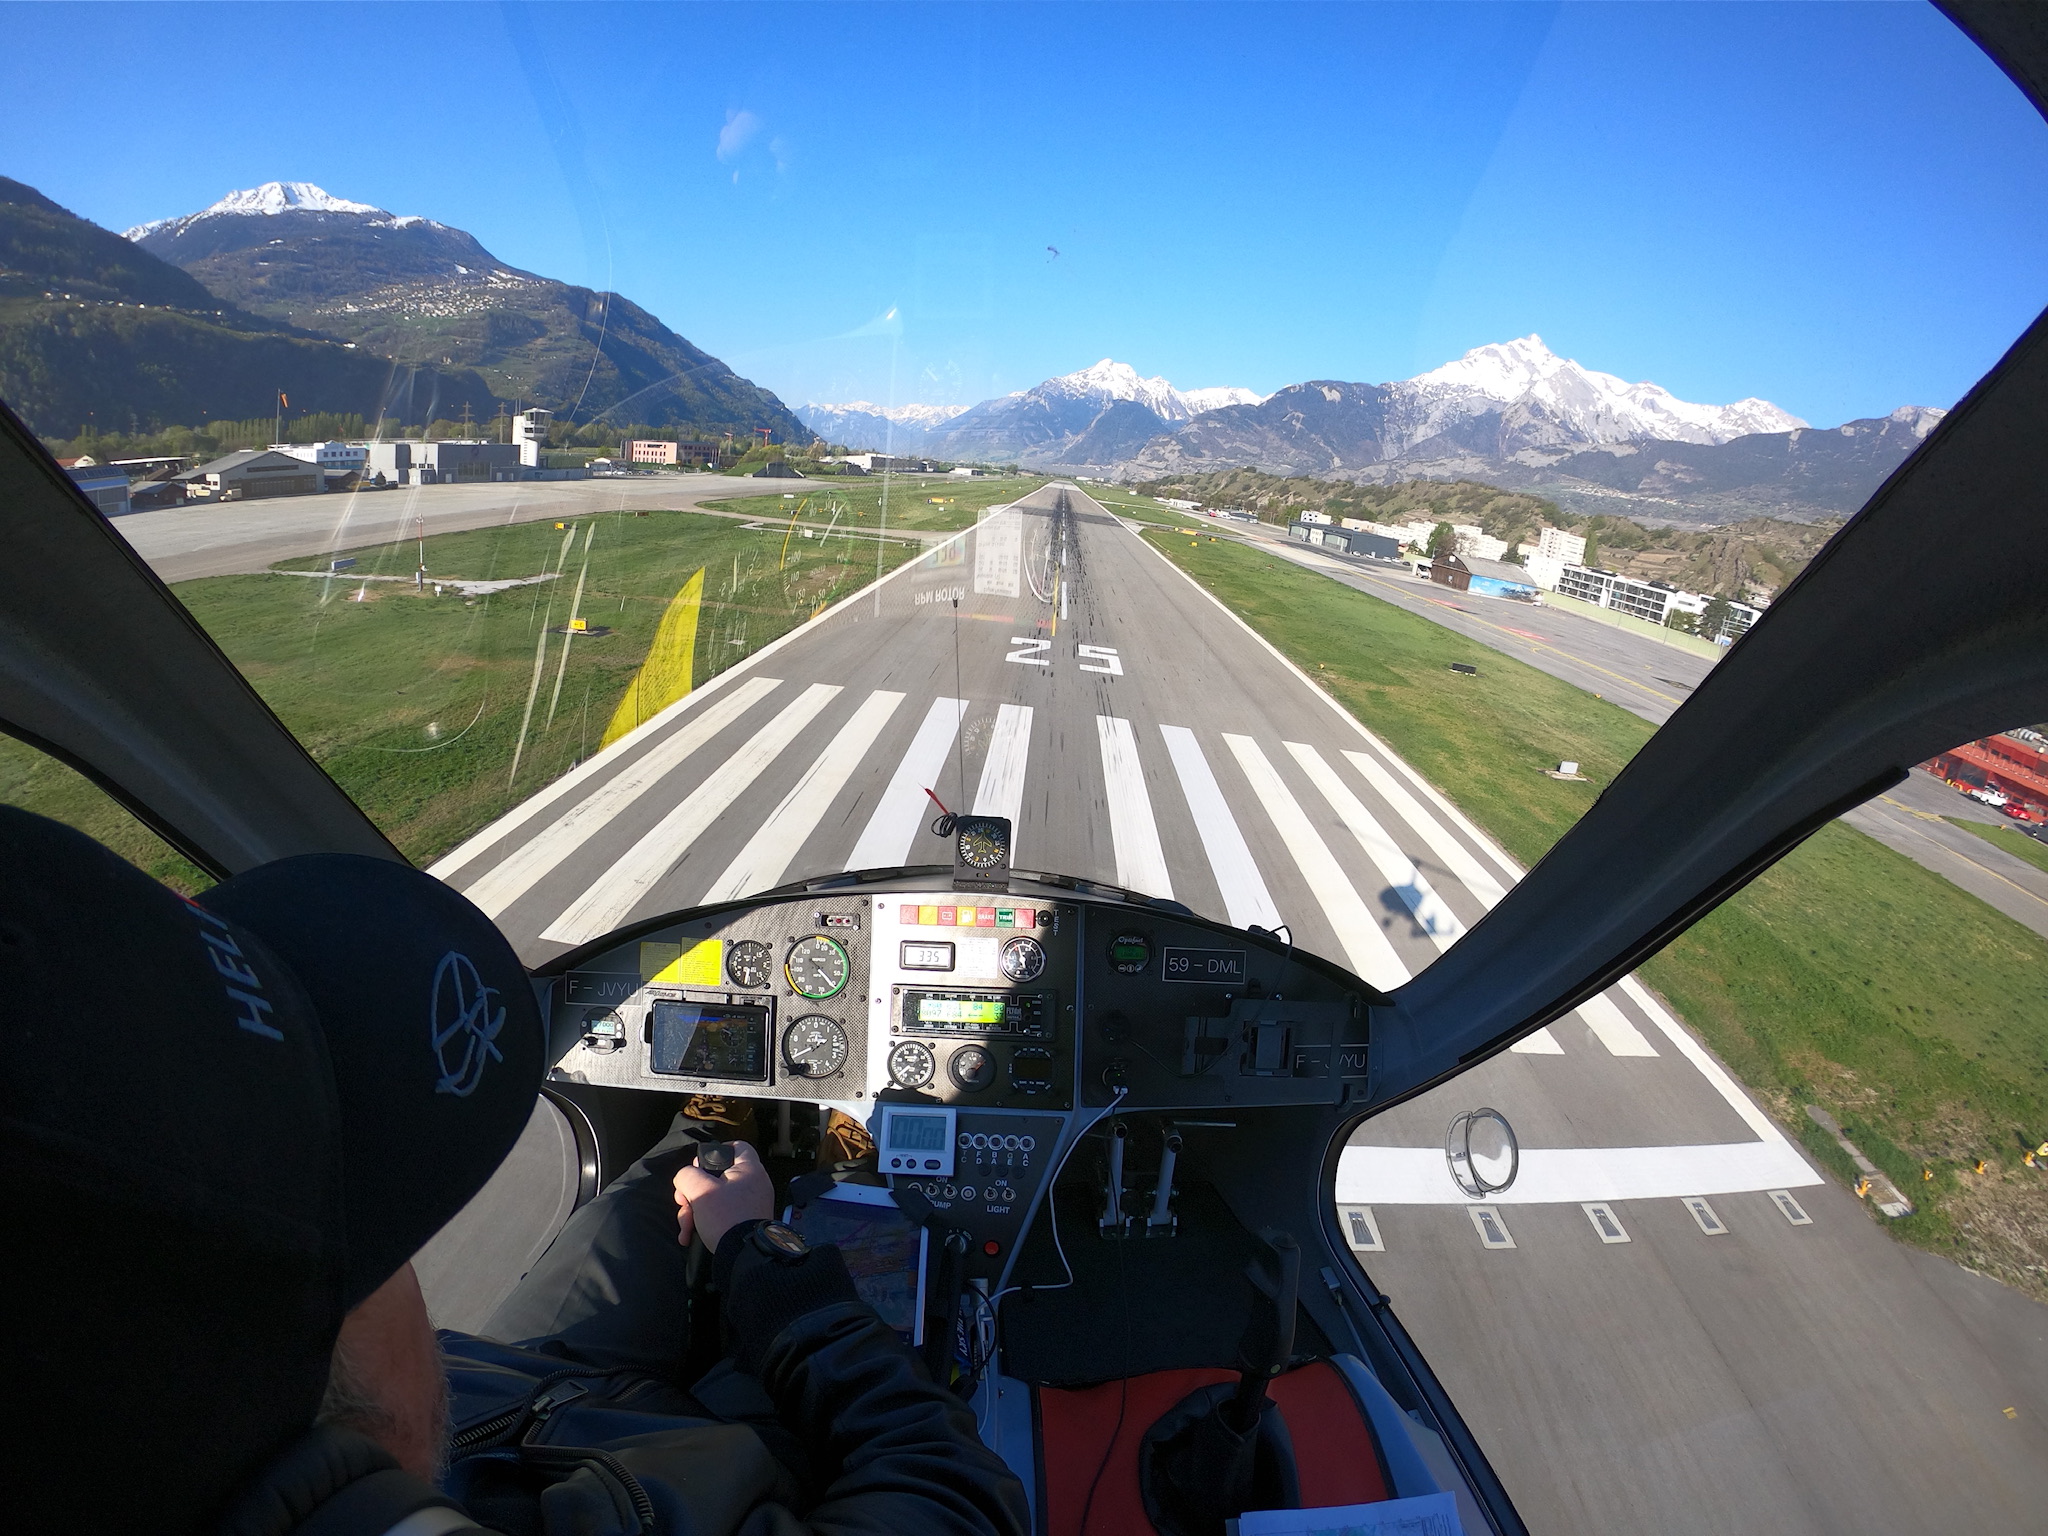 Un volo sopra le 4 valli in Svizzera